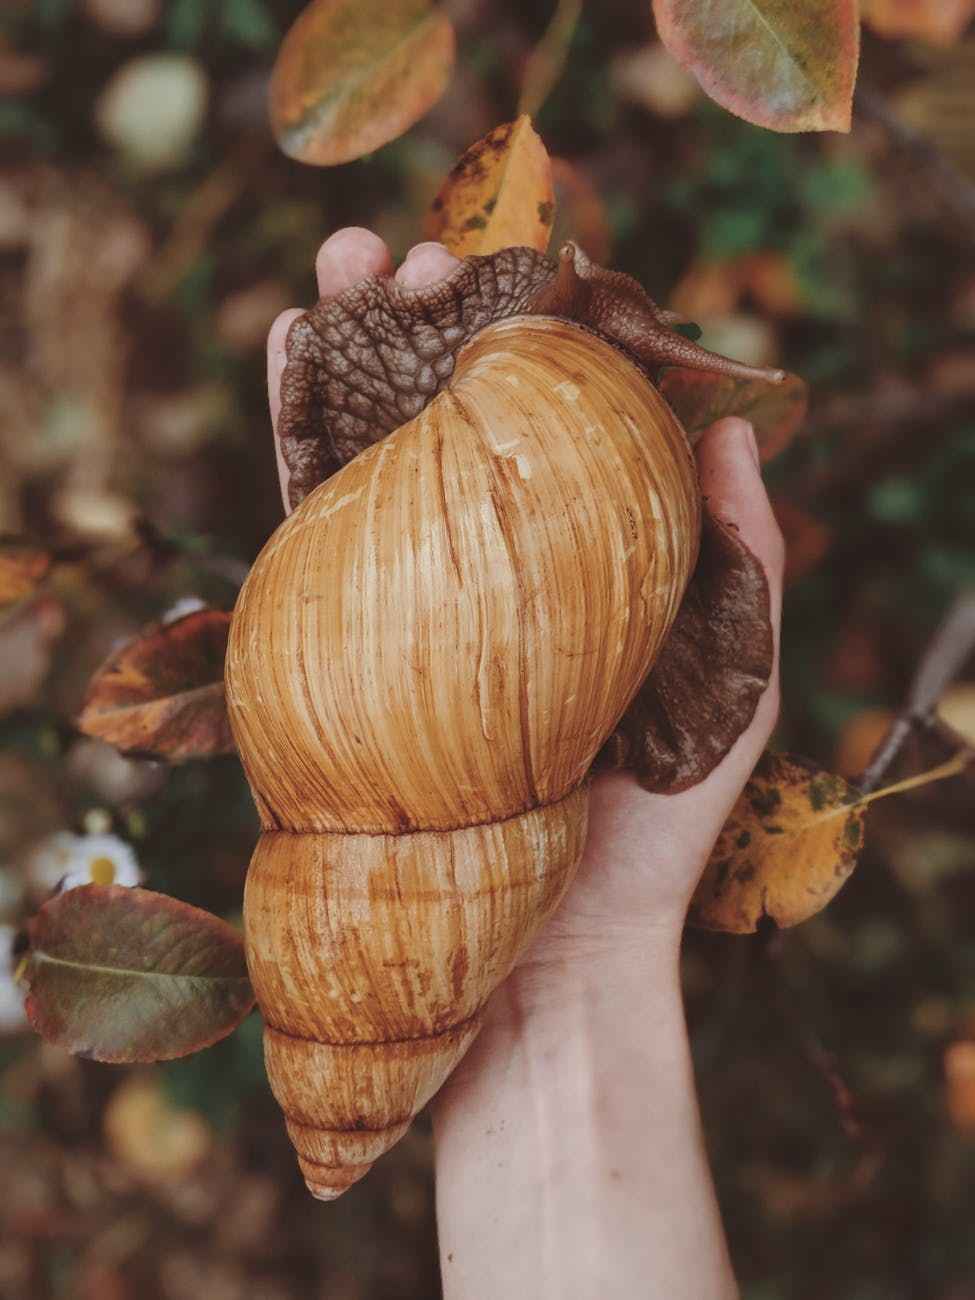 Huge snail shell